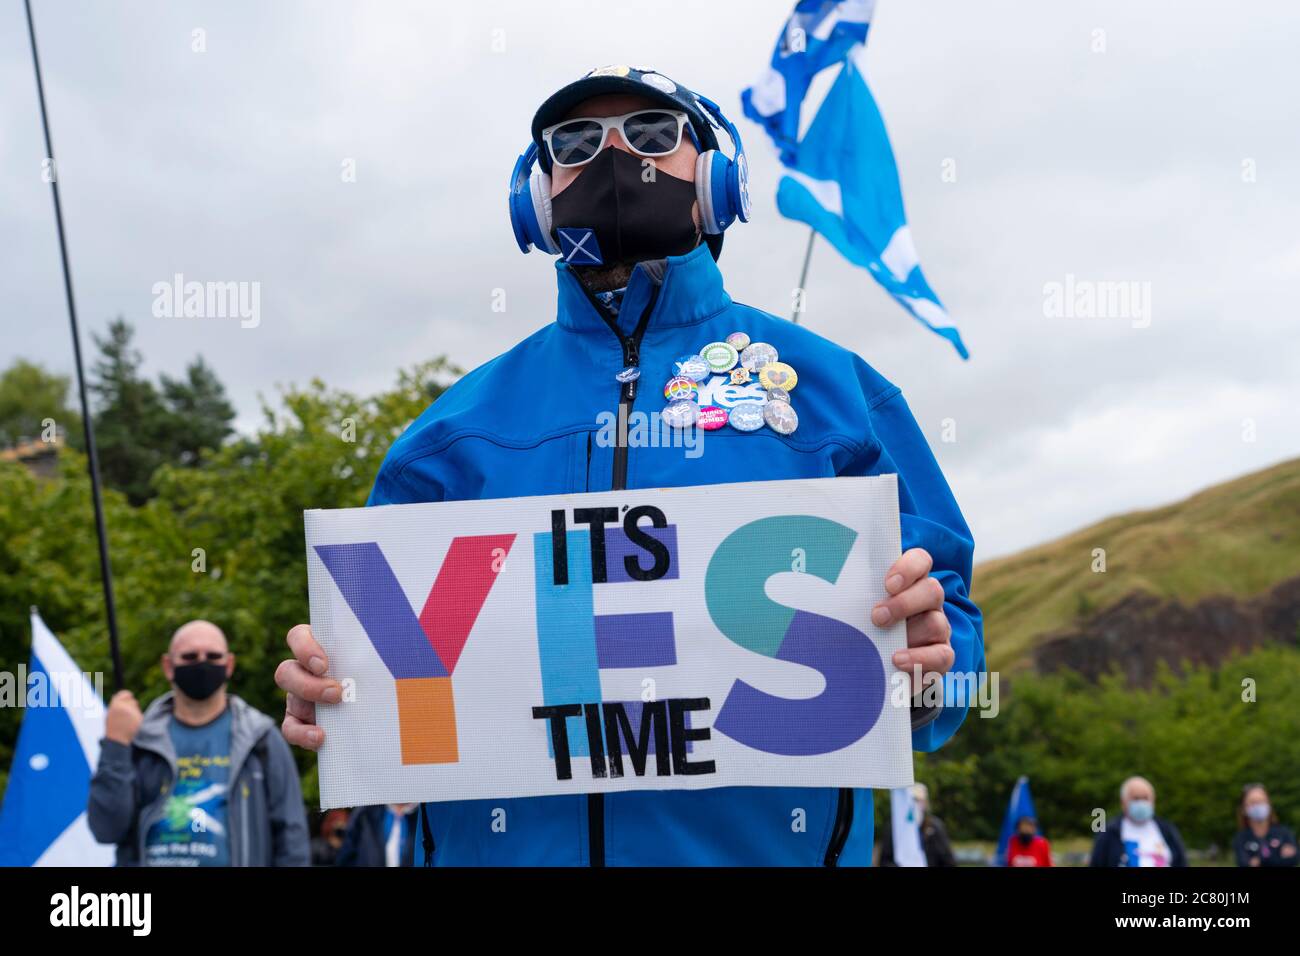 Edimbourg, Ecosse, Royaume-Uni. 20 juillet 2020. Manifestation pro-écossaise pour l'indépendance organisée aujourd'hui à Holyrood à Édimbourg par le groupe All under One Banner (AUOB) en dehors du Parlement écossais. Iain Masterton/Alay Live News Banque D'Images